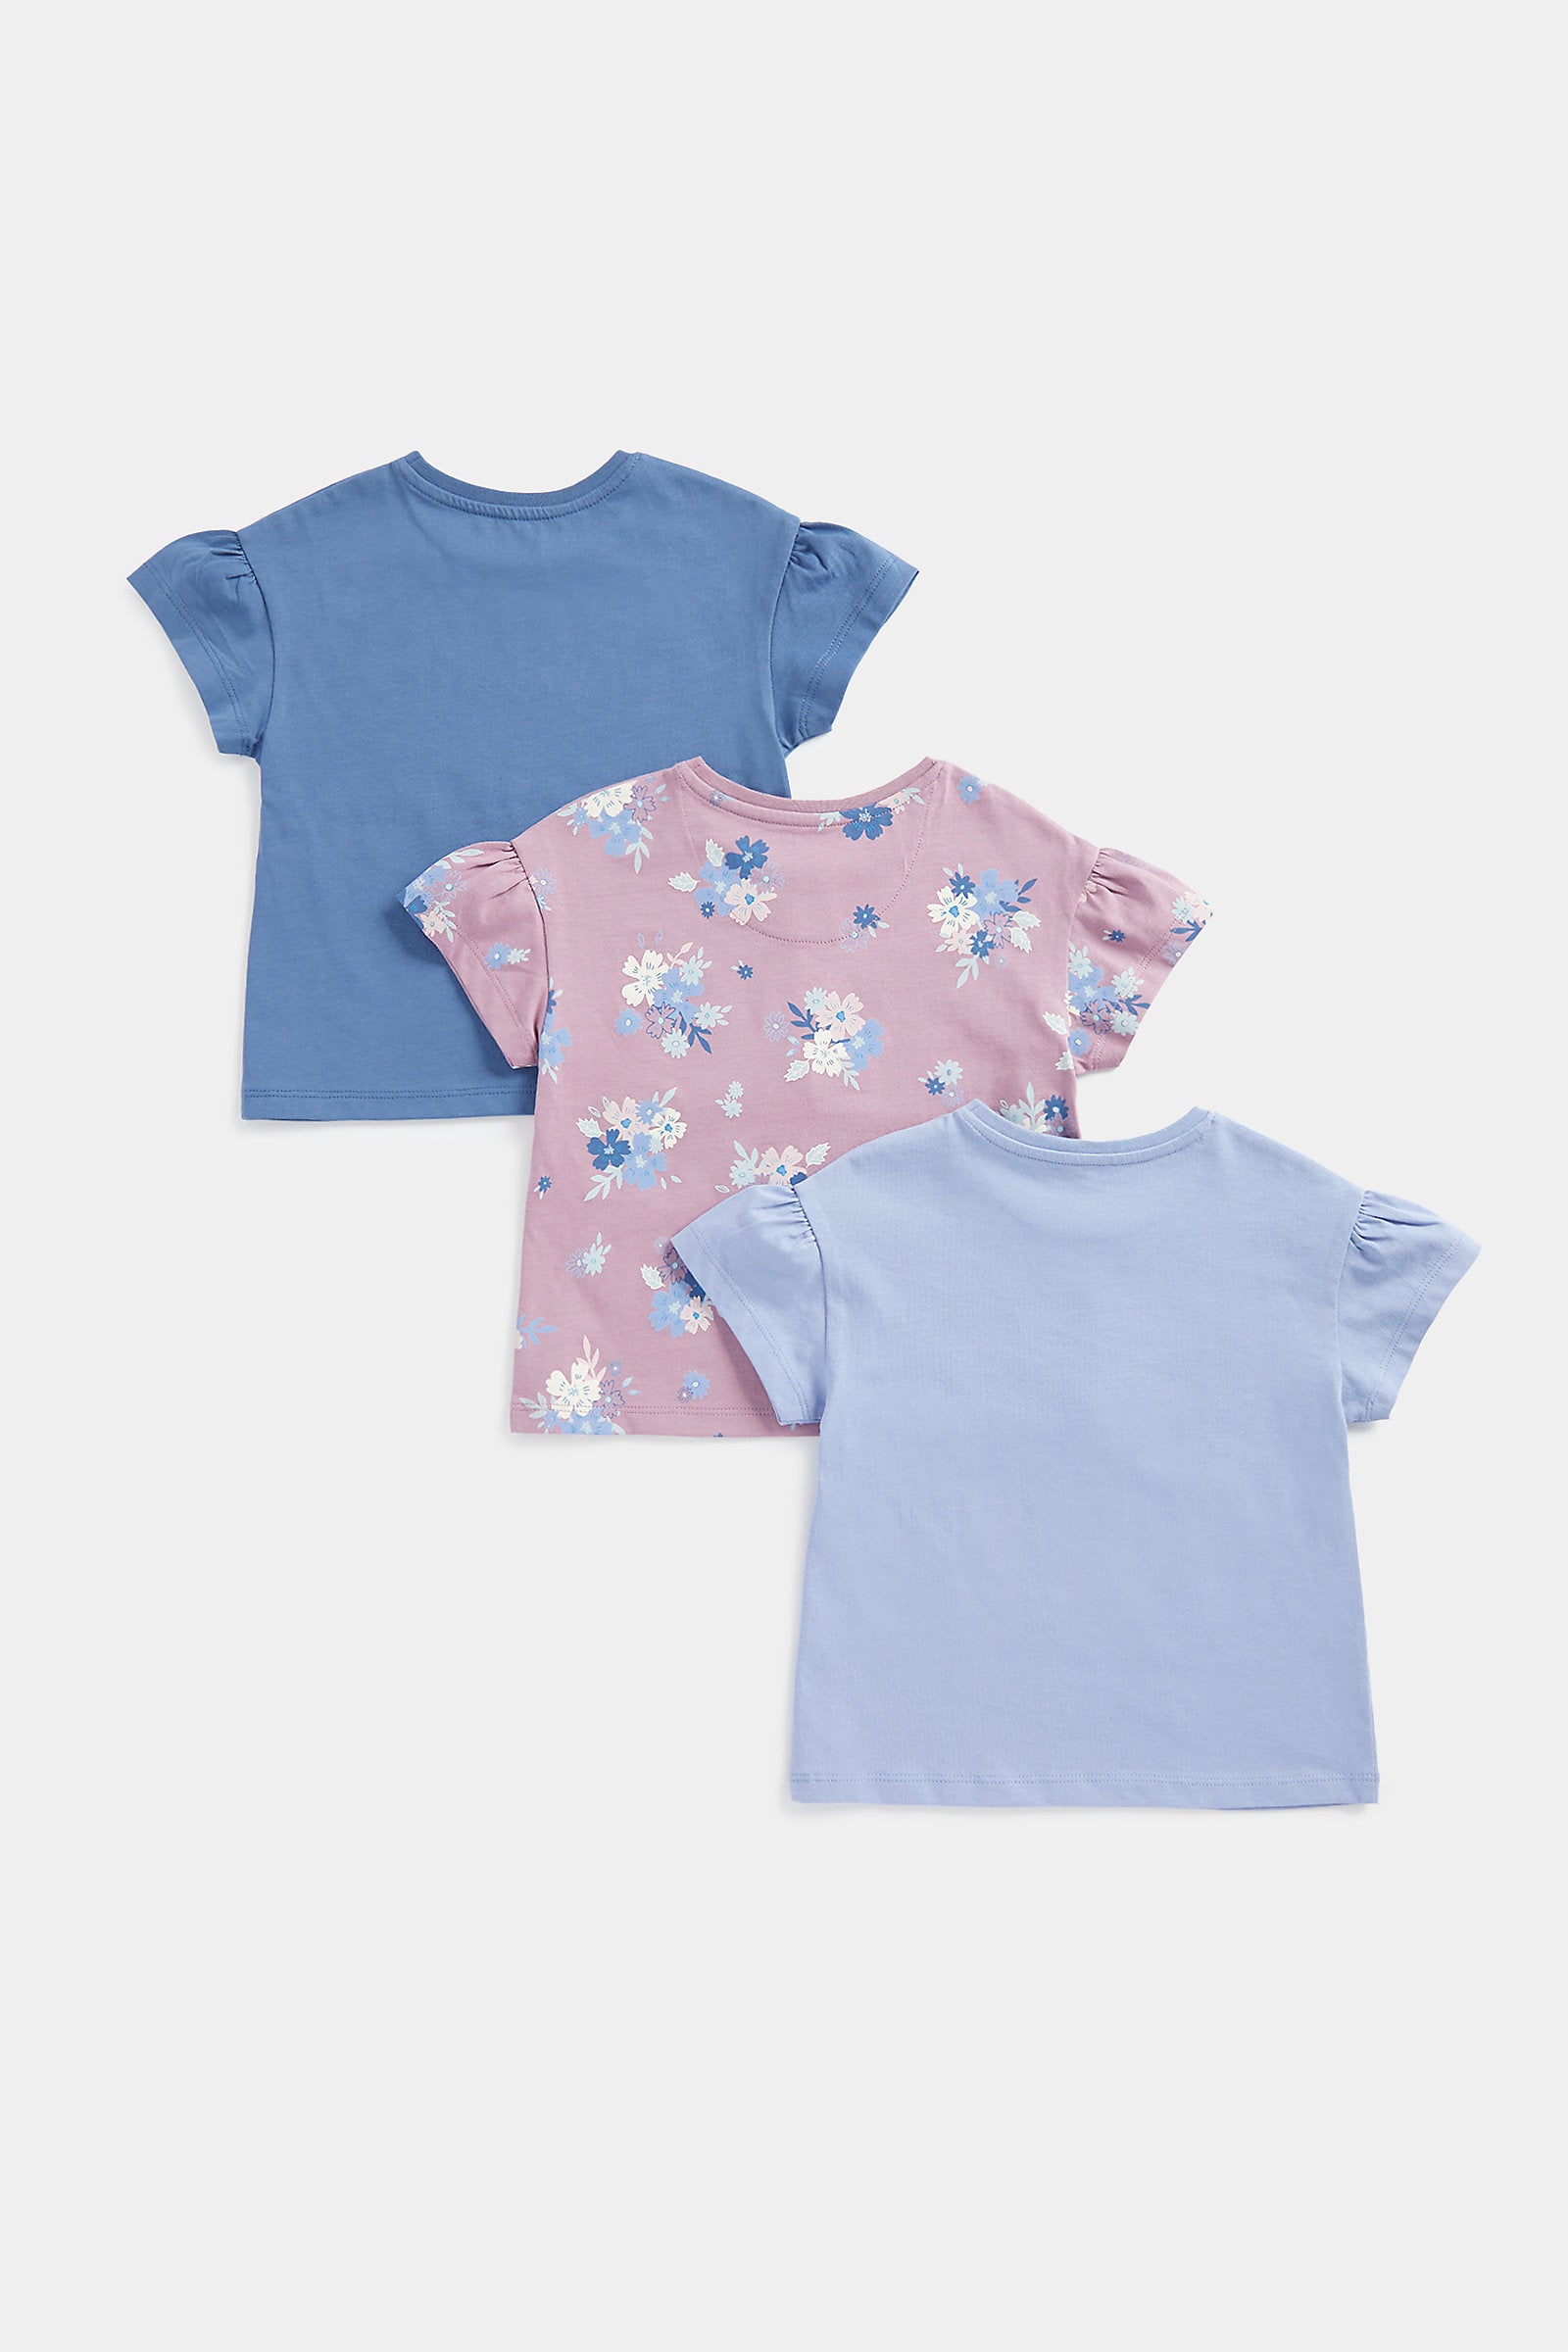 Mothercare Unique T-Shirts - 3 Pack